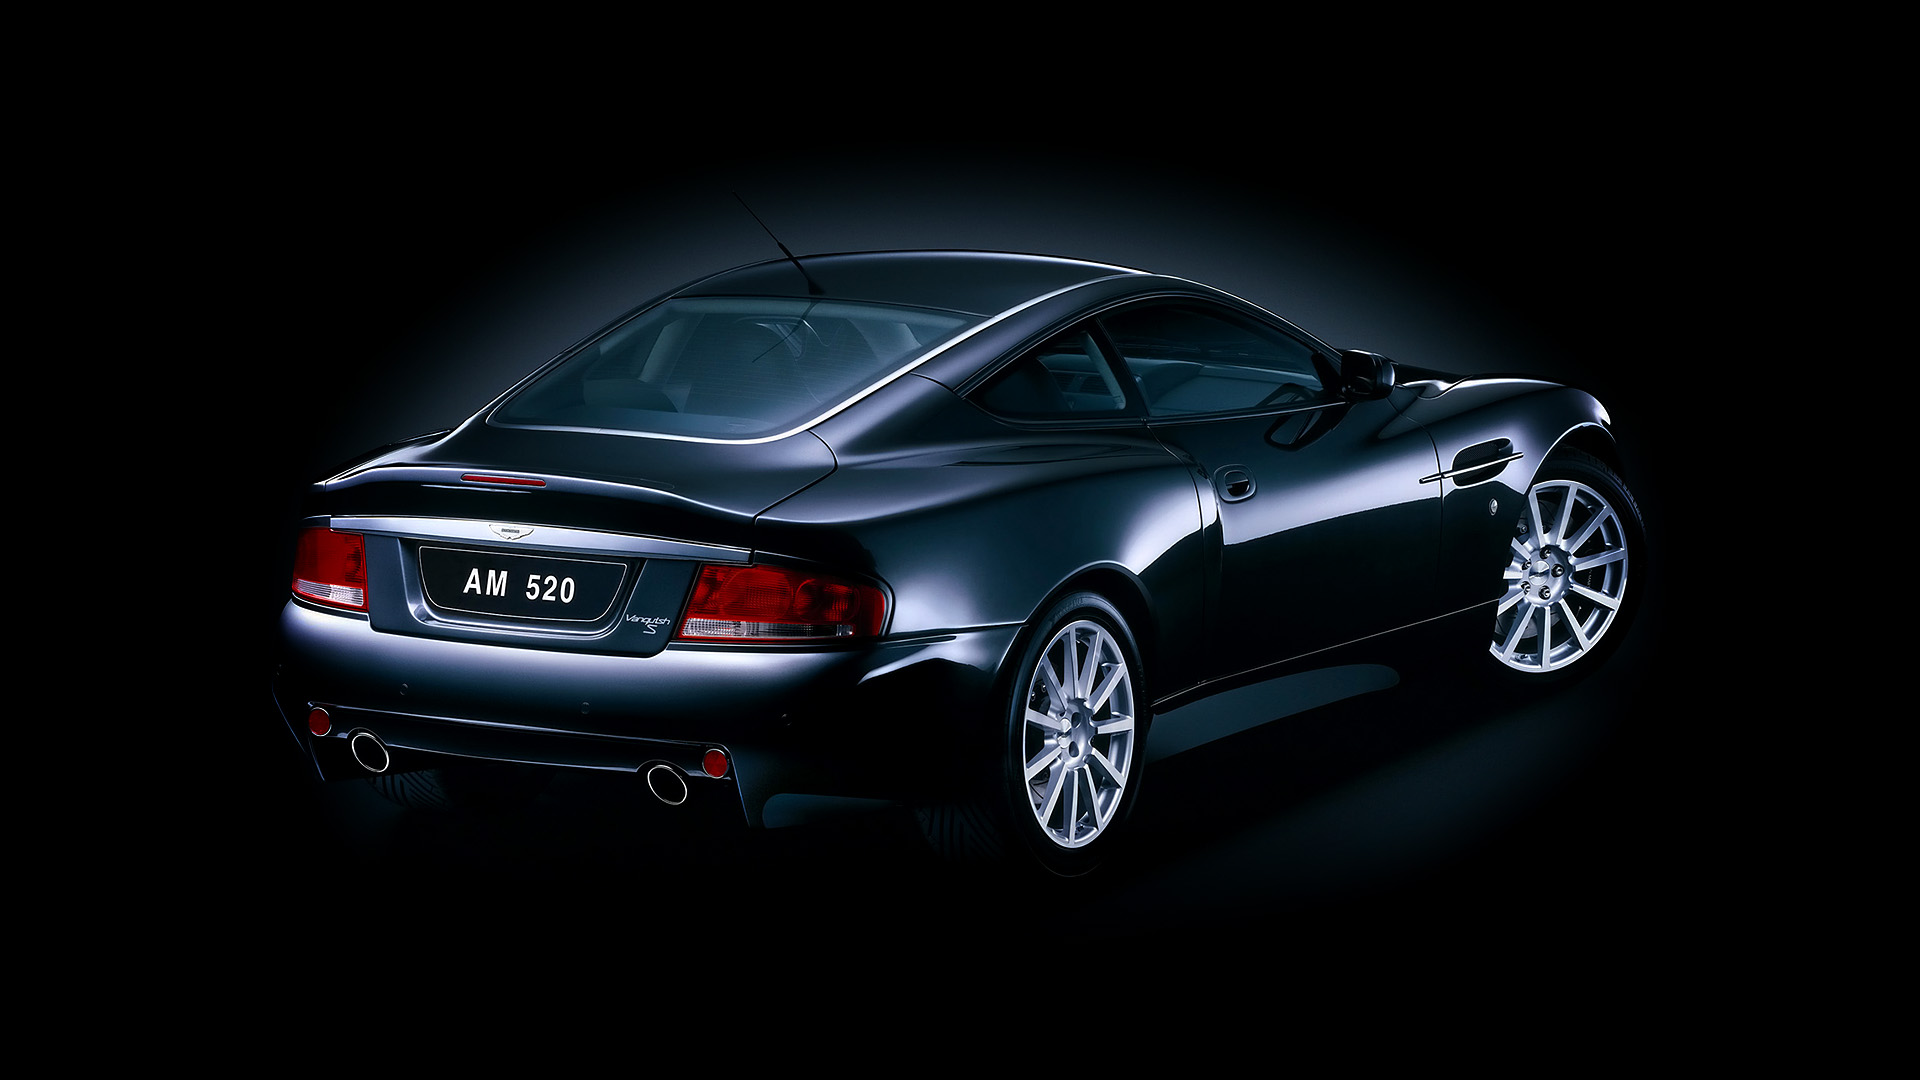 Descarga gratuita de fondo de pantalla para móvil de Aston Martin, Coche, Gran Turismo, Vehículos, Aston Martin Vanquish, Aston Martin Vanquish S.